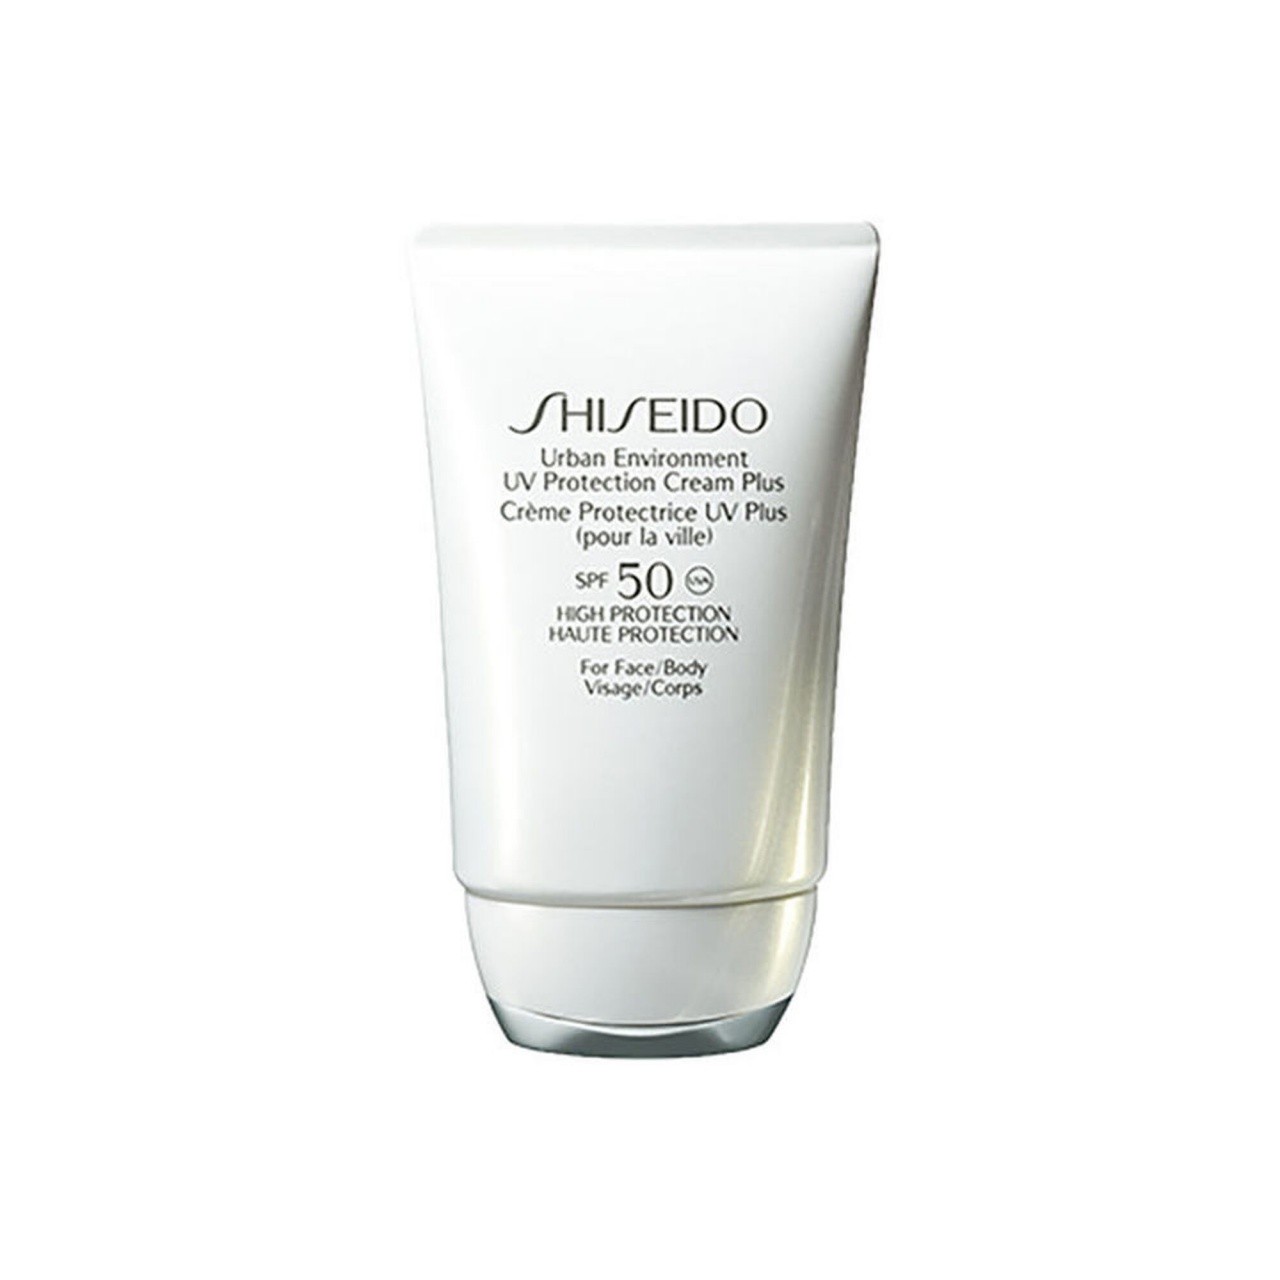 Shiseido Urban Environment UV Protection Cream Plus crema protezione solare